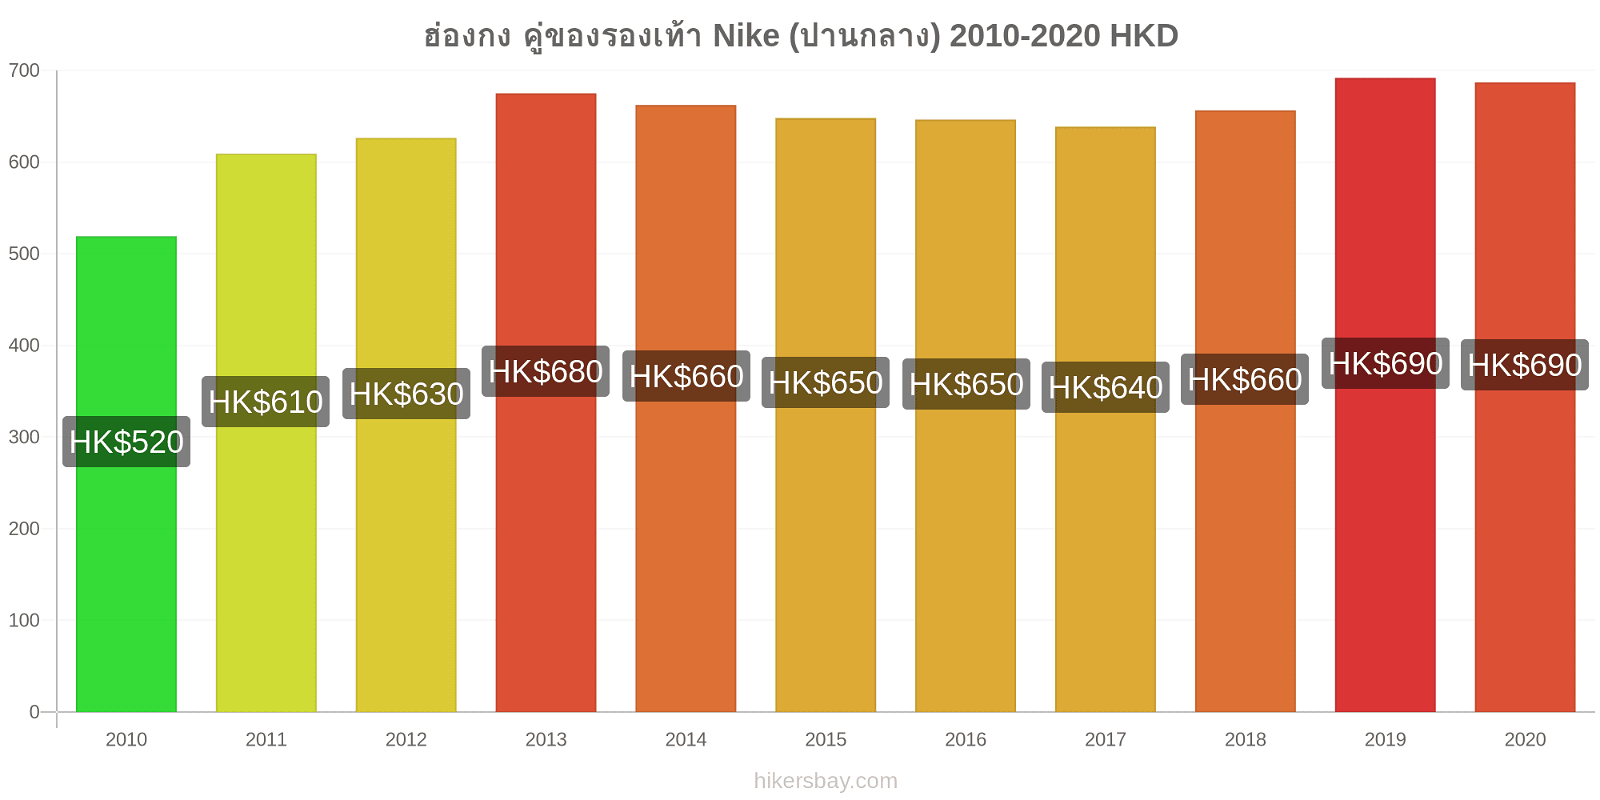 ฮ่องกง การเปลี่ยนแปลงราคา คู่ของรองเท้า Nike (ปานกลาง) hikersbay.com